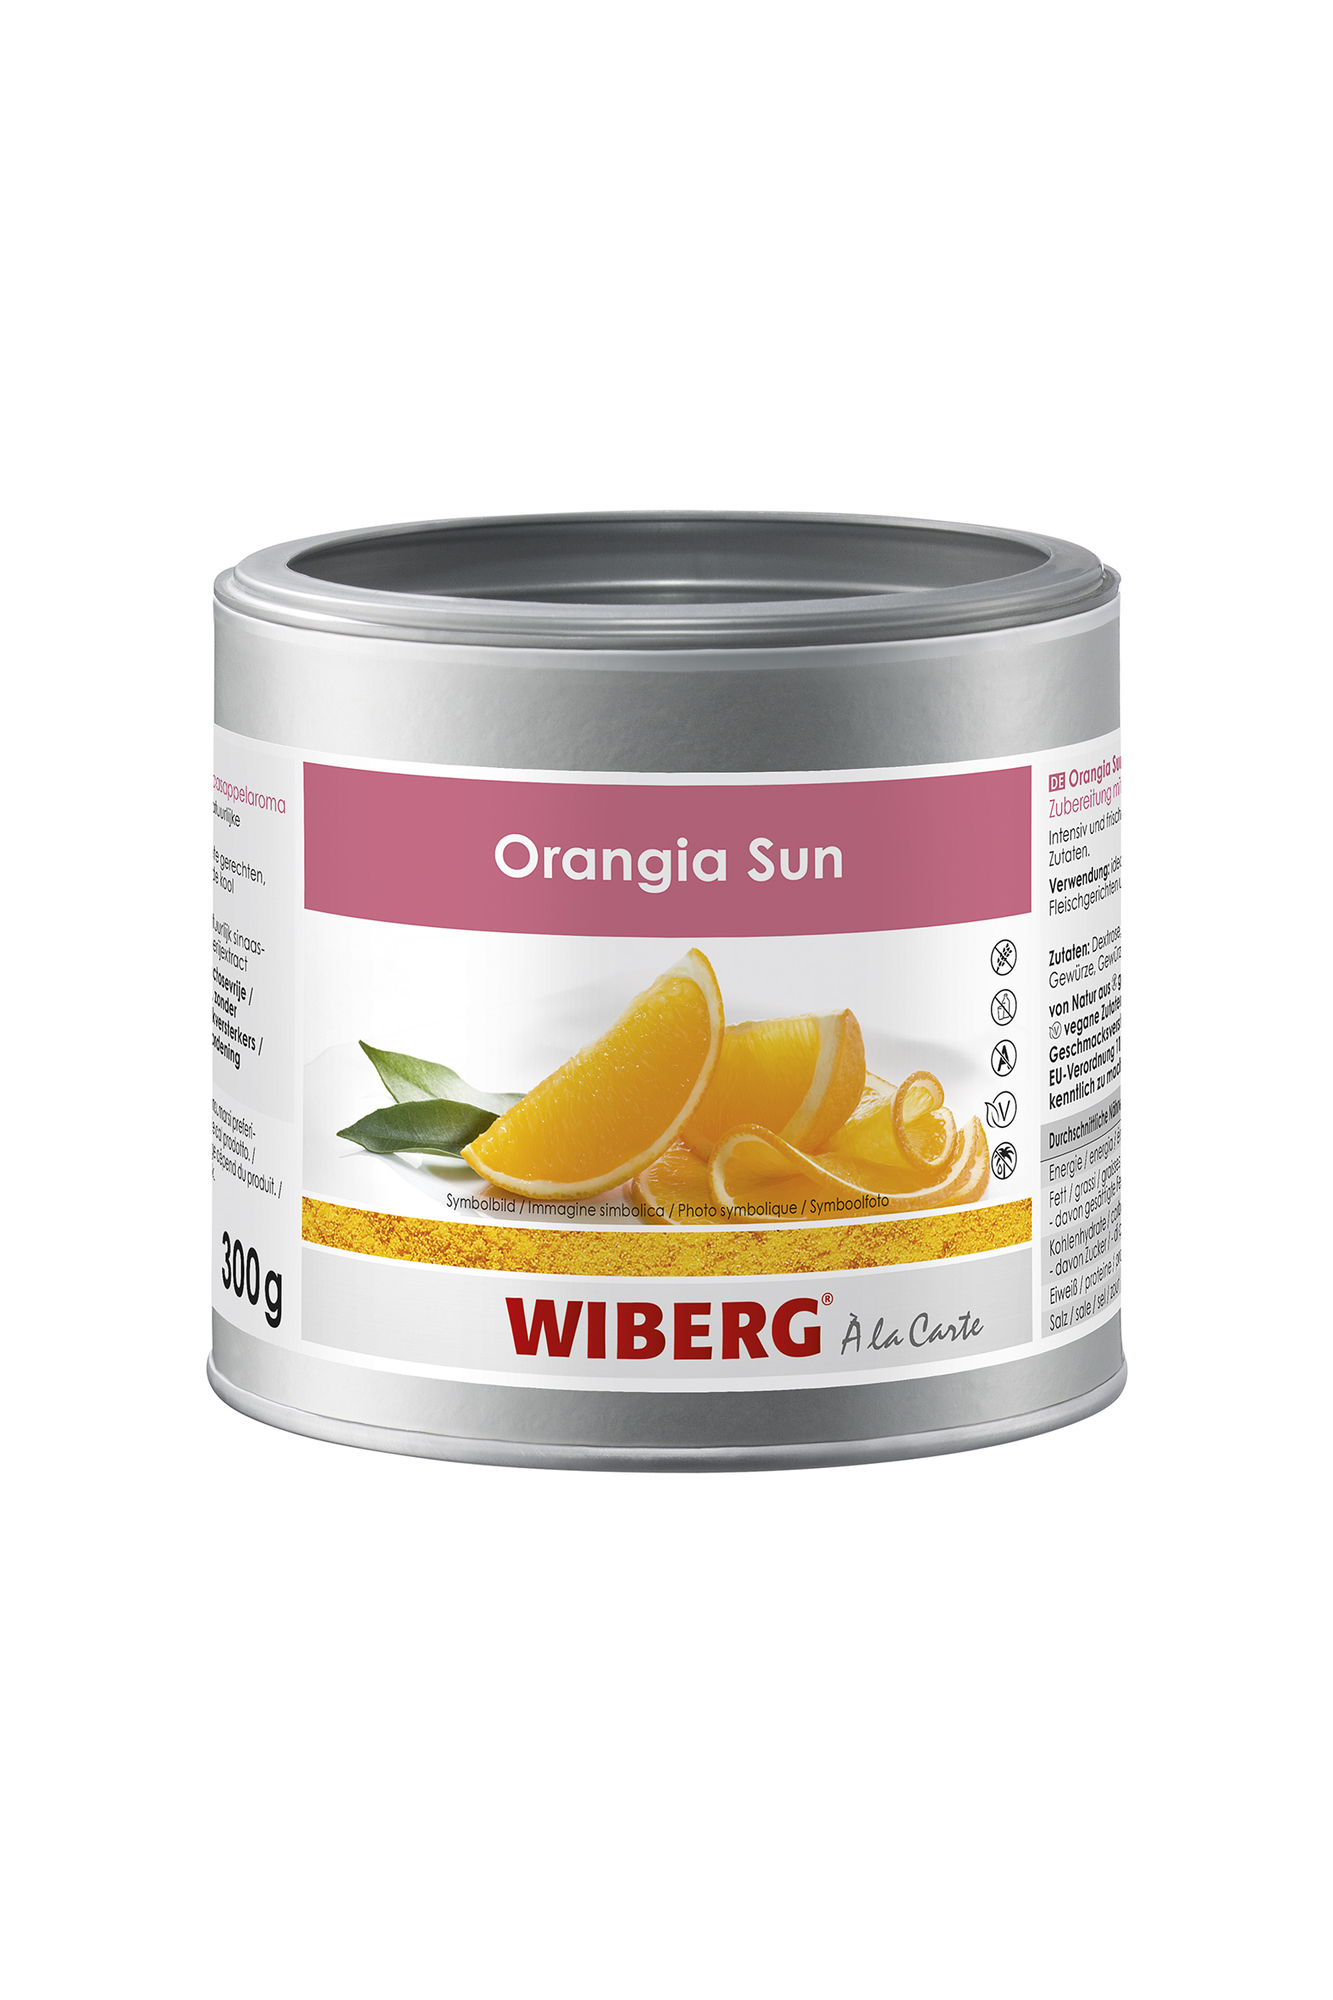 Orangia Sun (300g ) 470ml